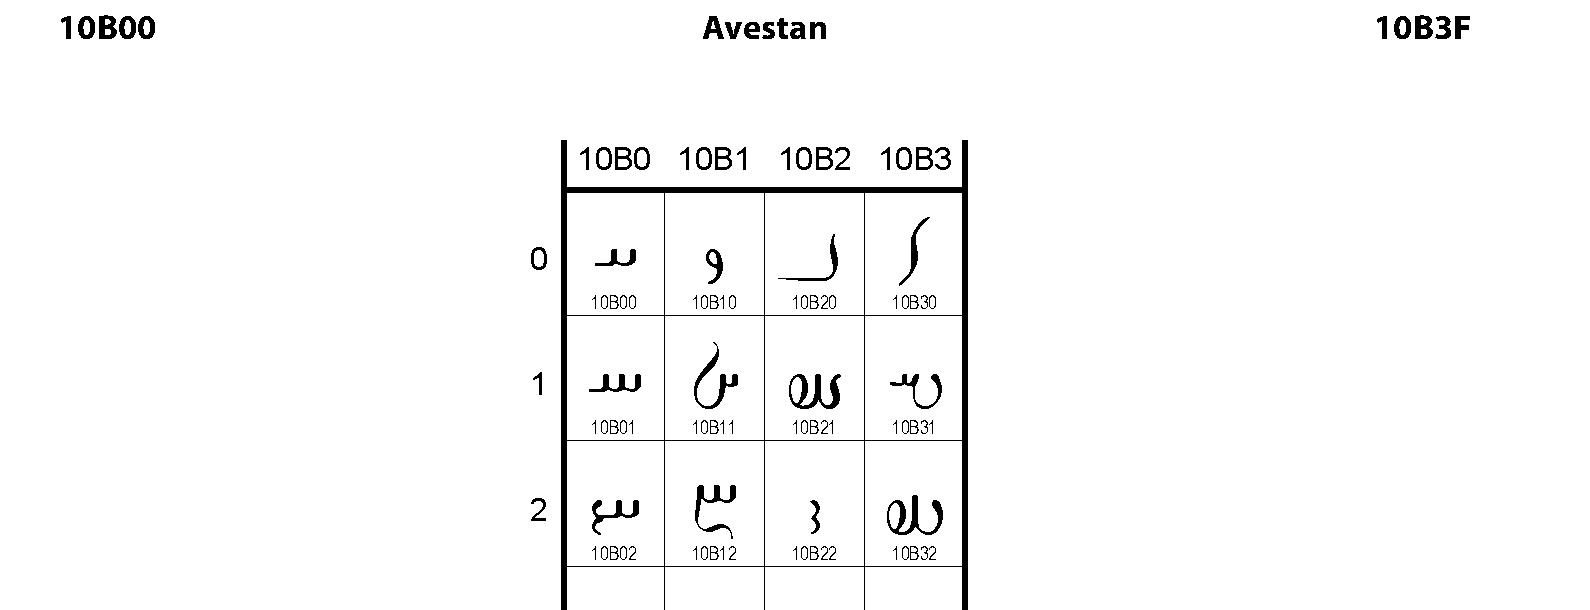 Unicode - Avestan